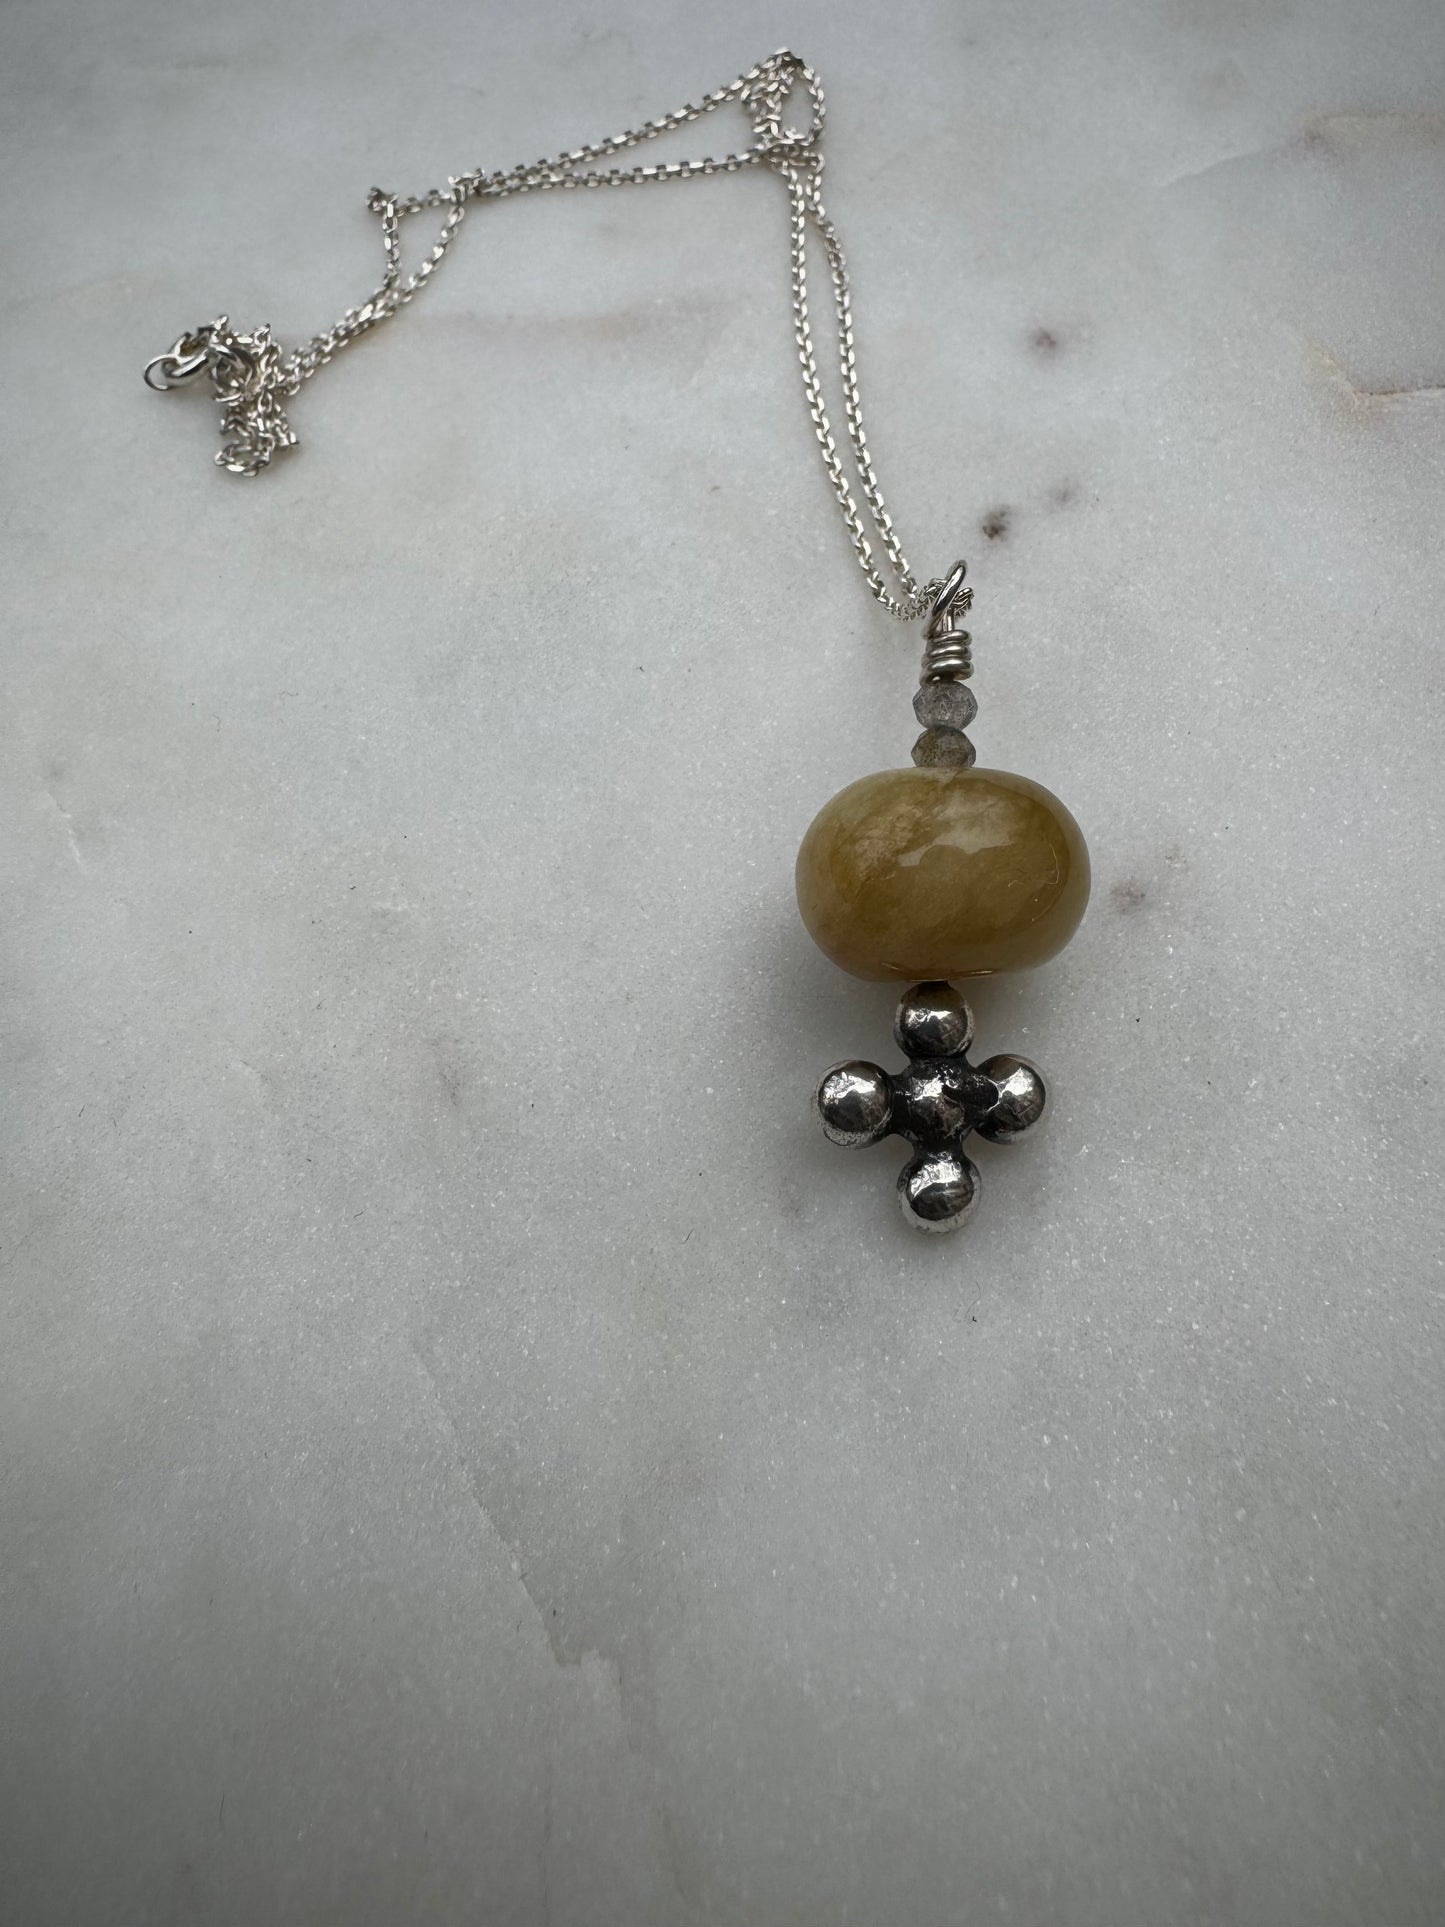 Jade necklace with labradorite